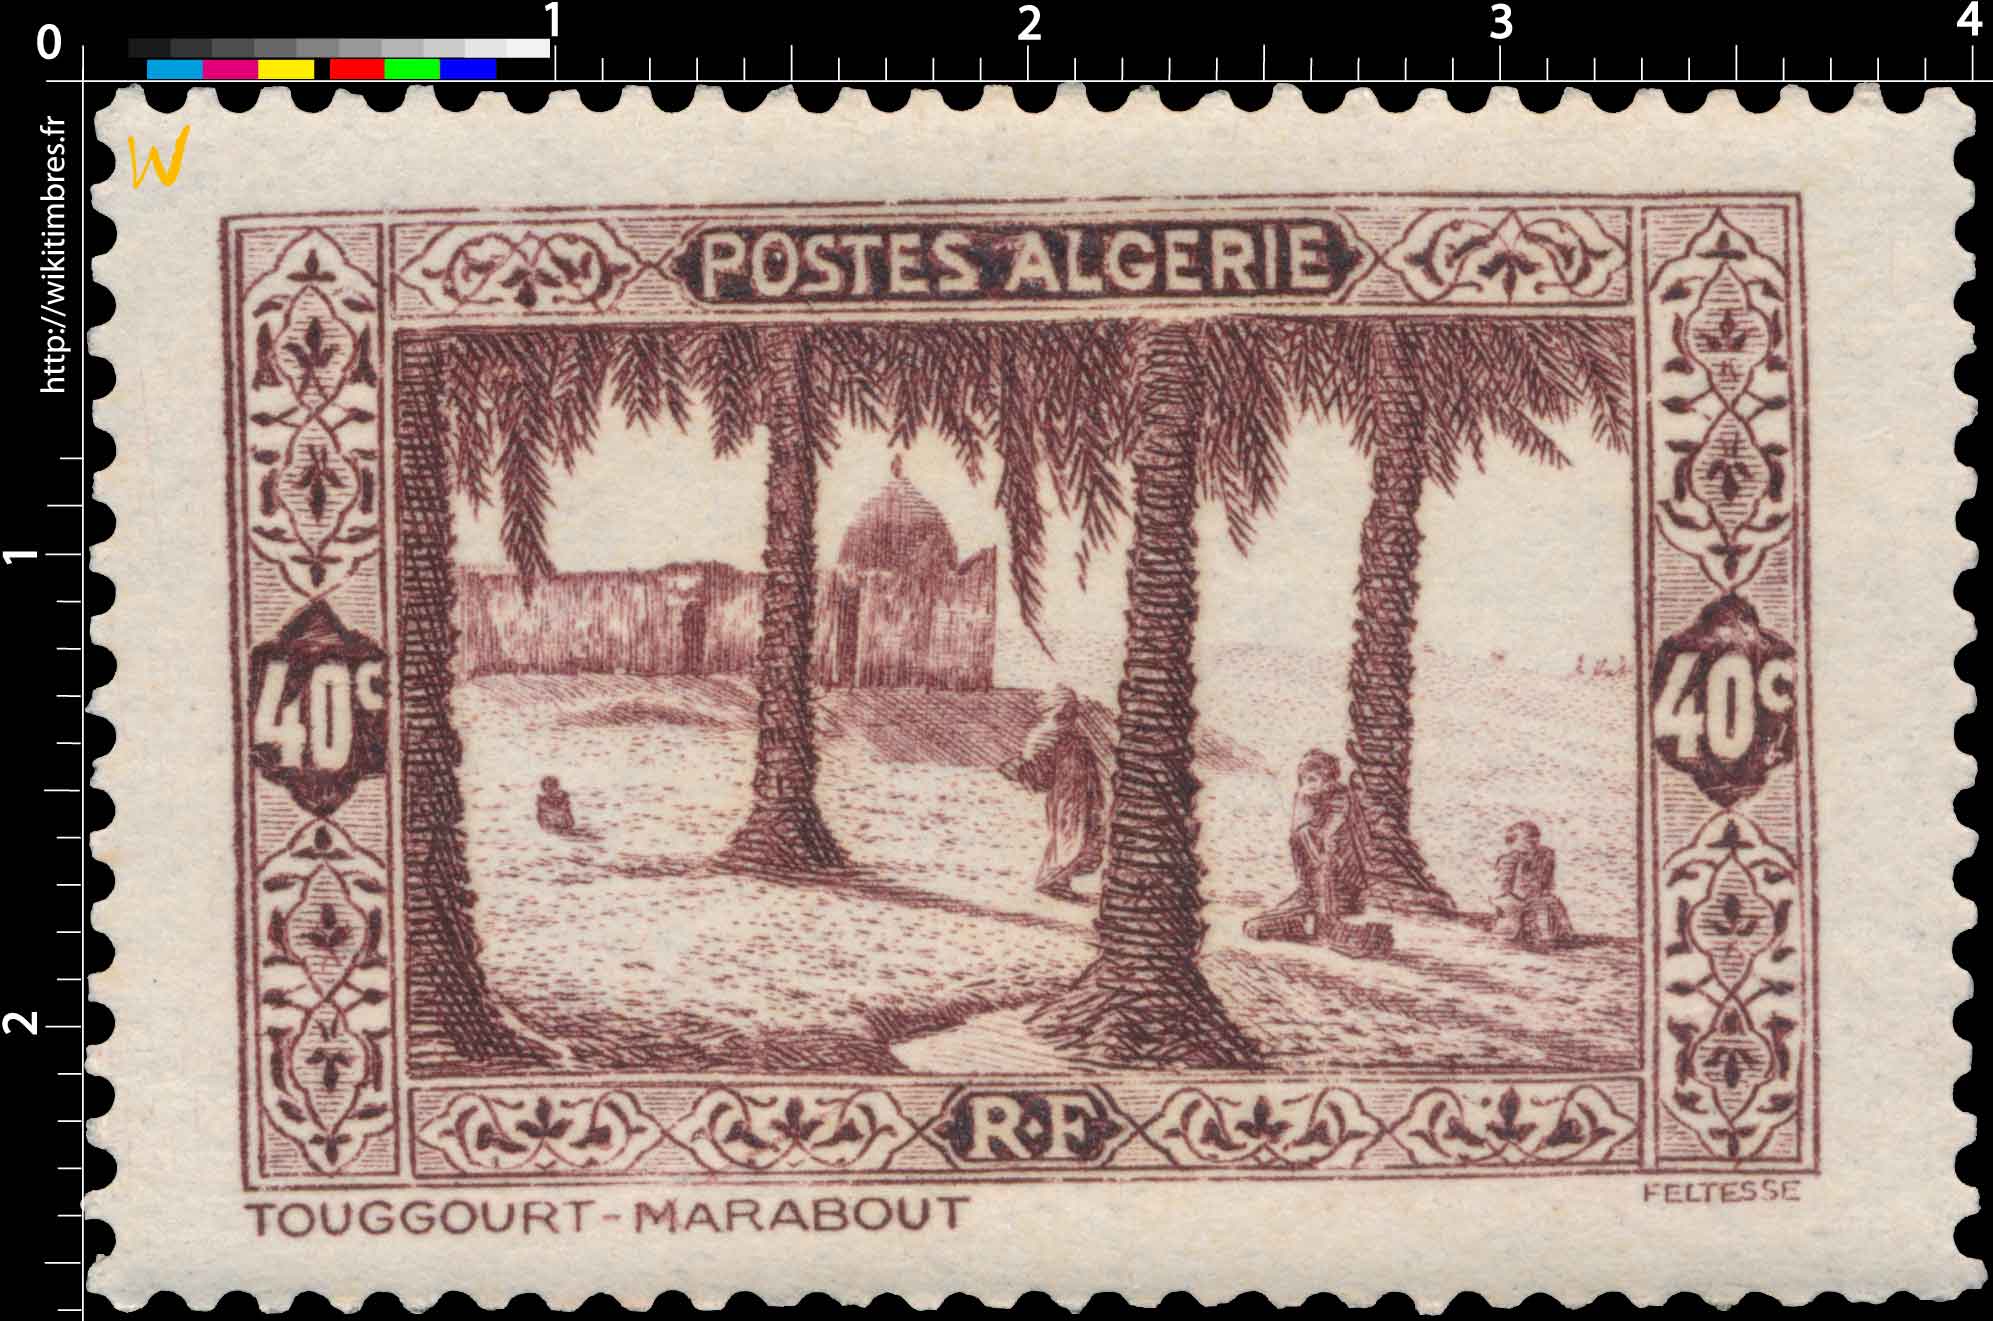 Algérie - Touggourt - Marabout 